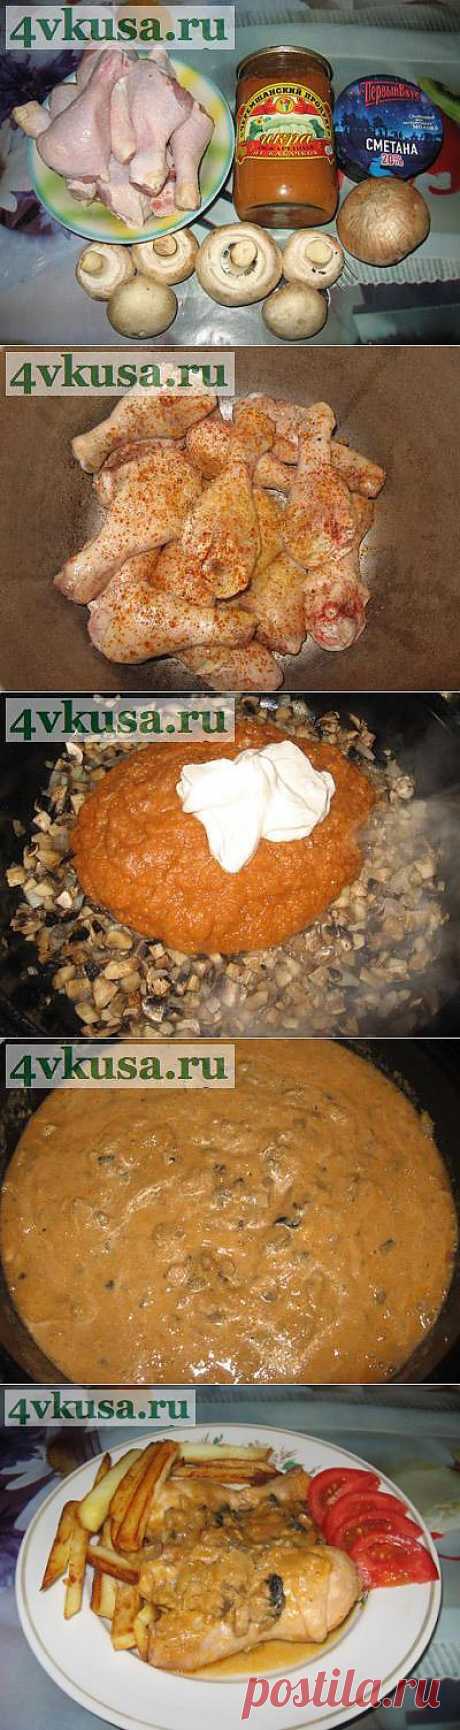 Курица в кабачковой икре с грибами. Фоторецепт. | 4vkusa.ru